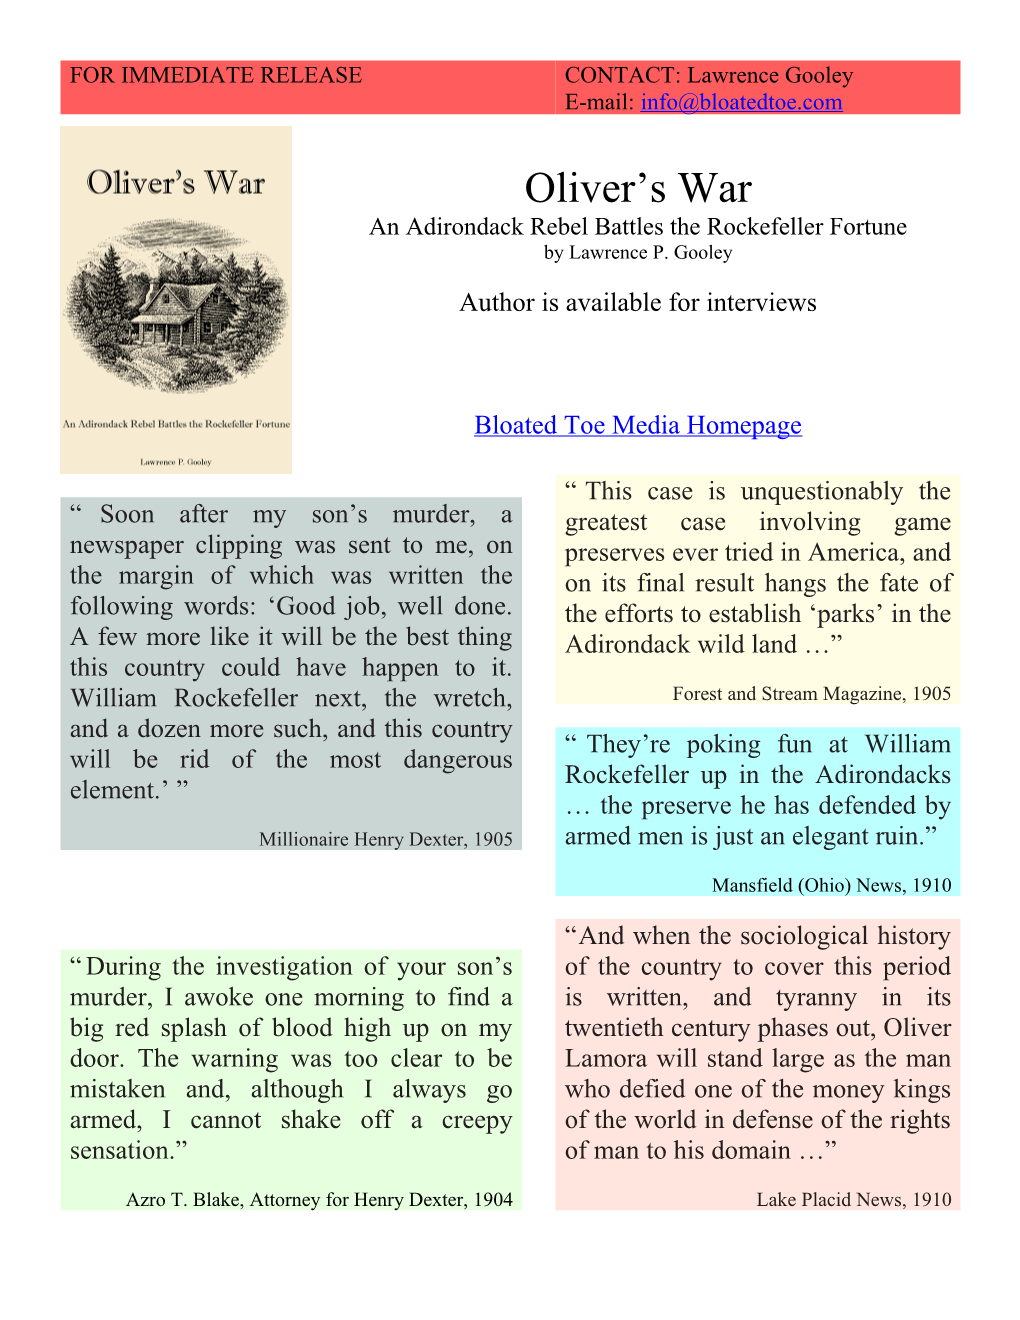 Press Release: Oliver's War